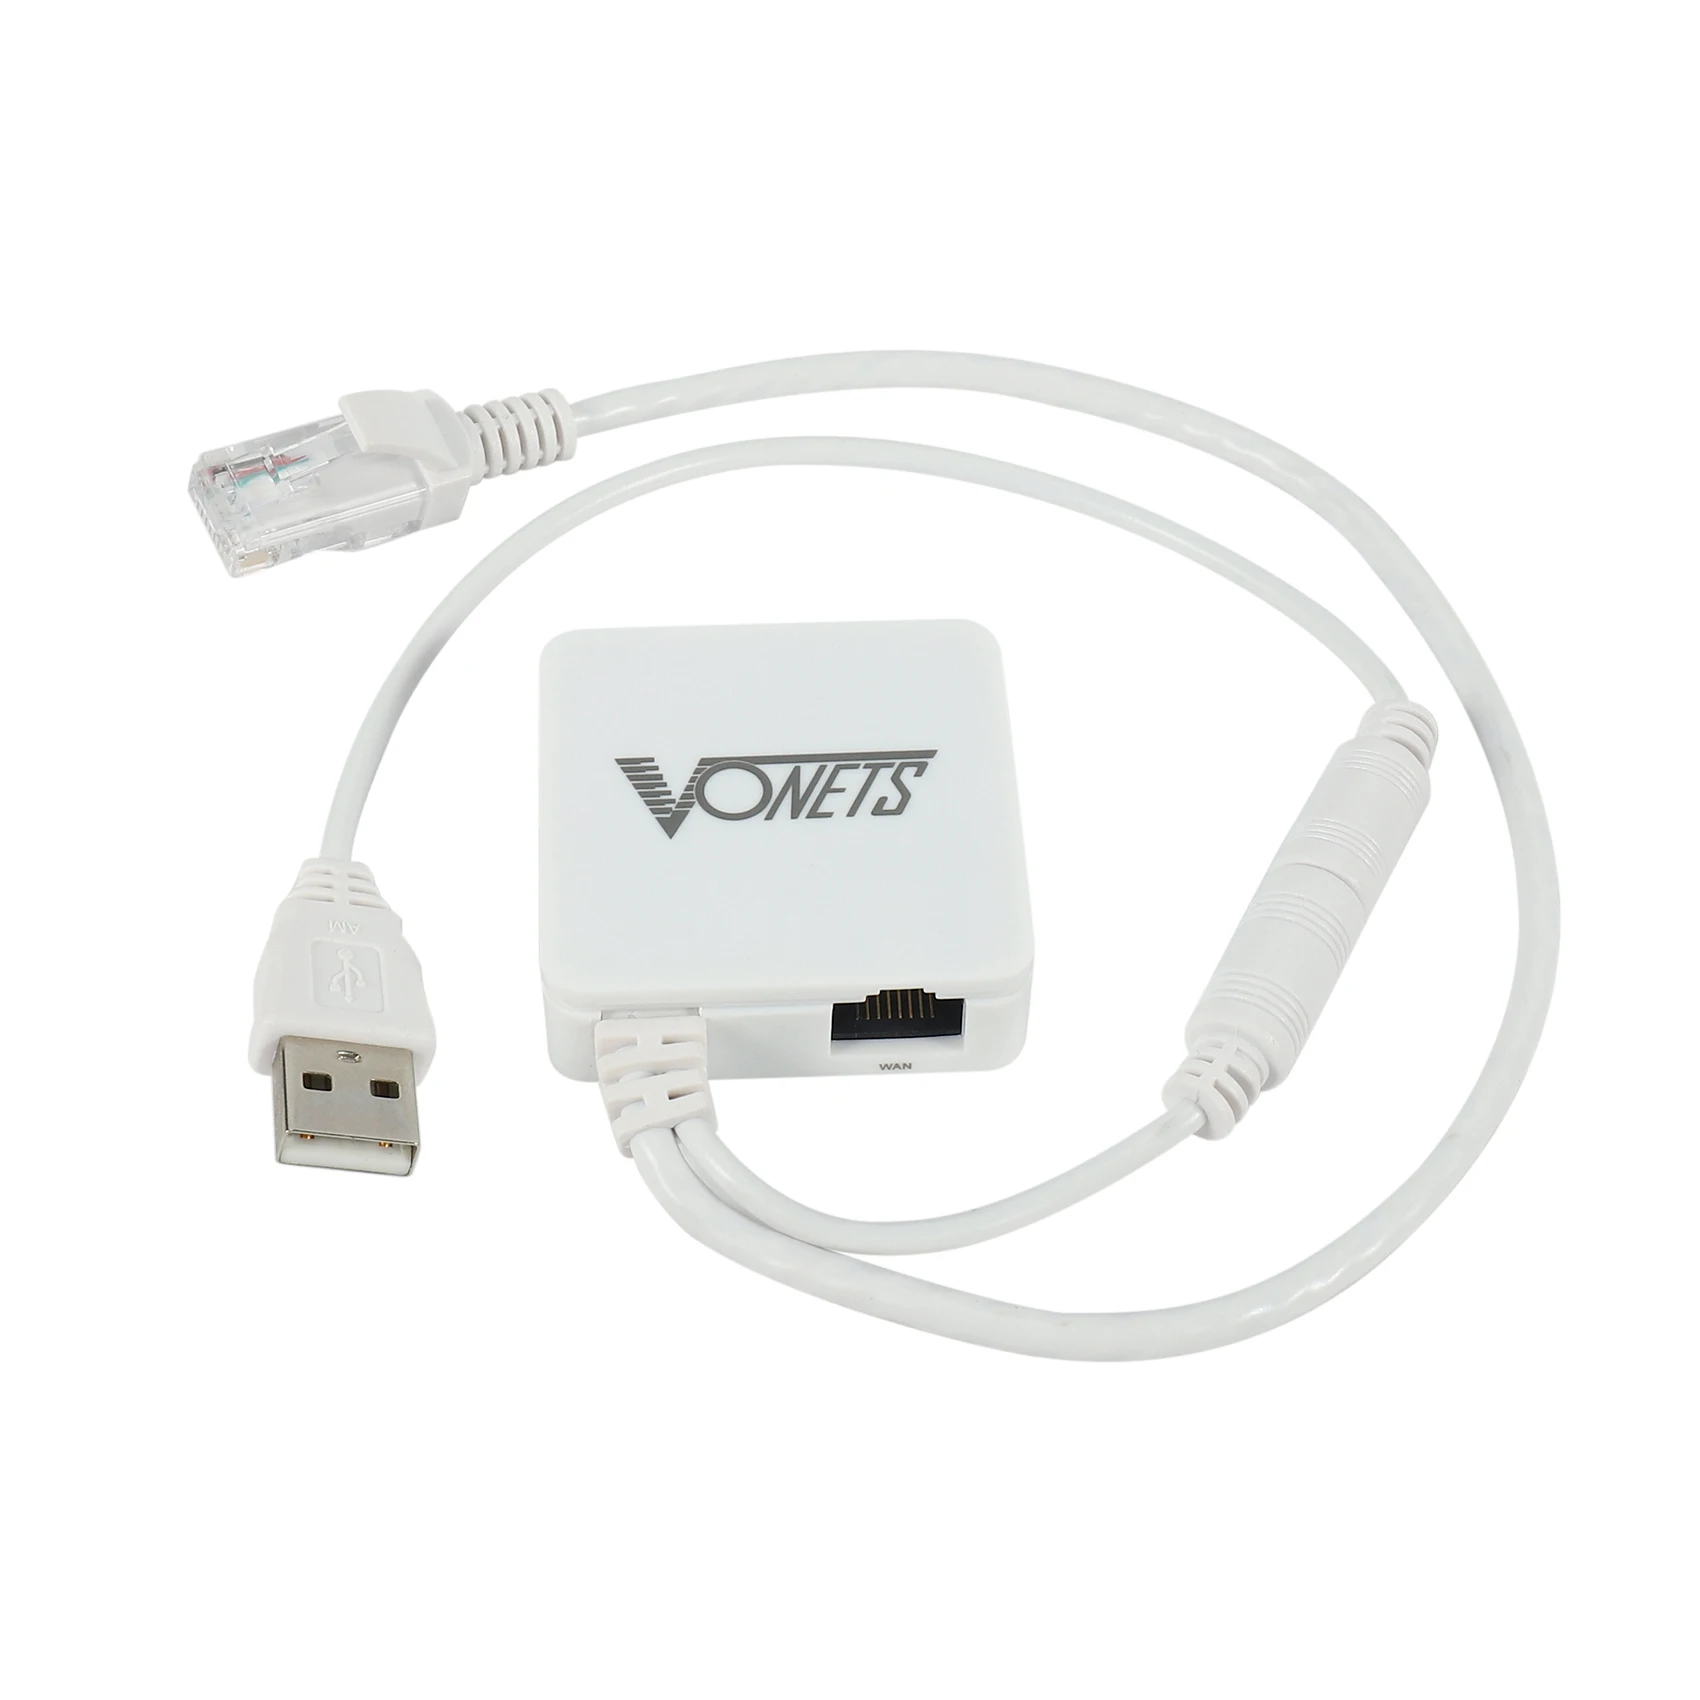 VONETS VAR11N-300 Мини Многофункциональный Беспроводной Портативный Wifi-маршрутизатор/Wifi Мост/WiFi Ретранслятор 300 Мбит/с по протоколу 802.11n